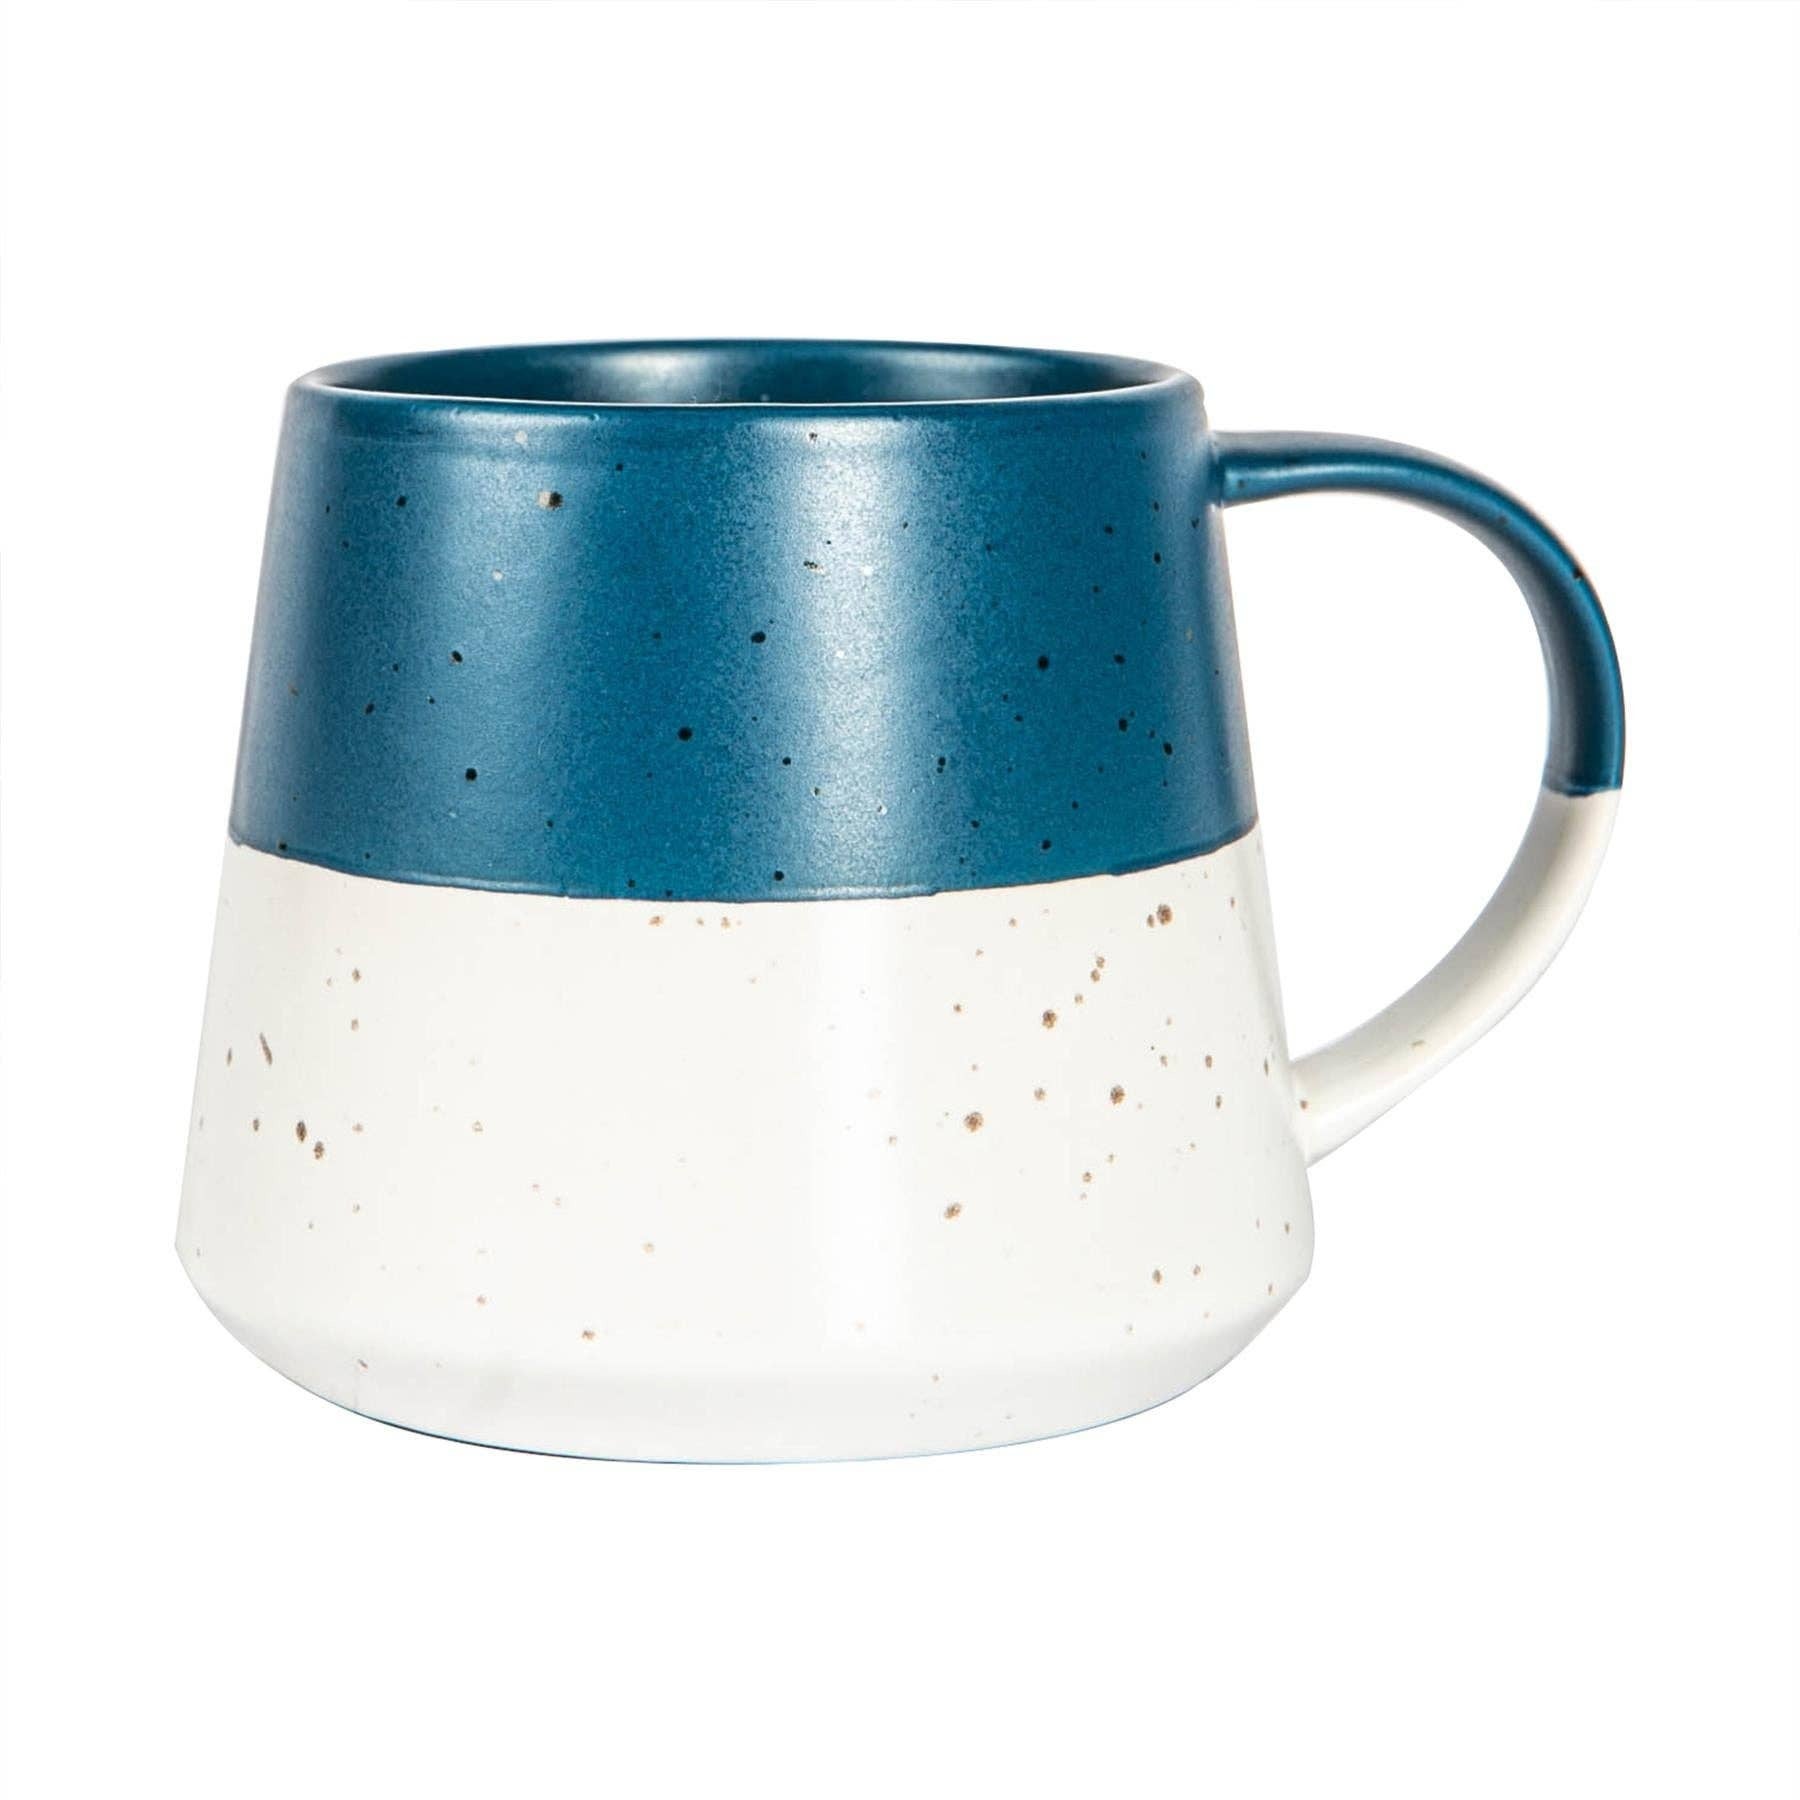 Nicola Spring 370ml Navy Ceramic Dipped Coffee Mug